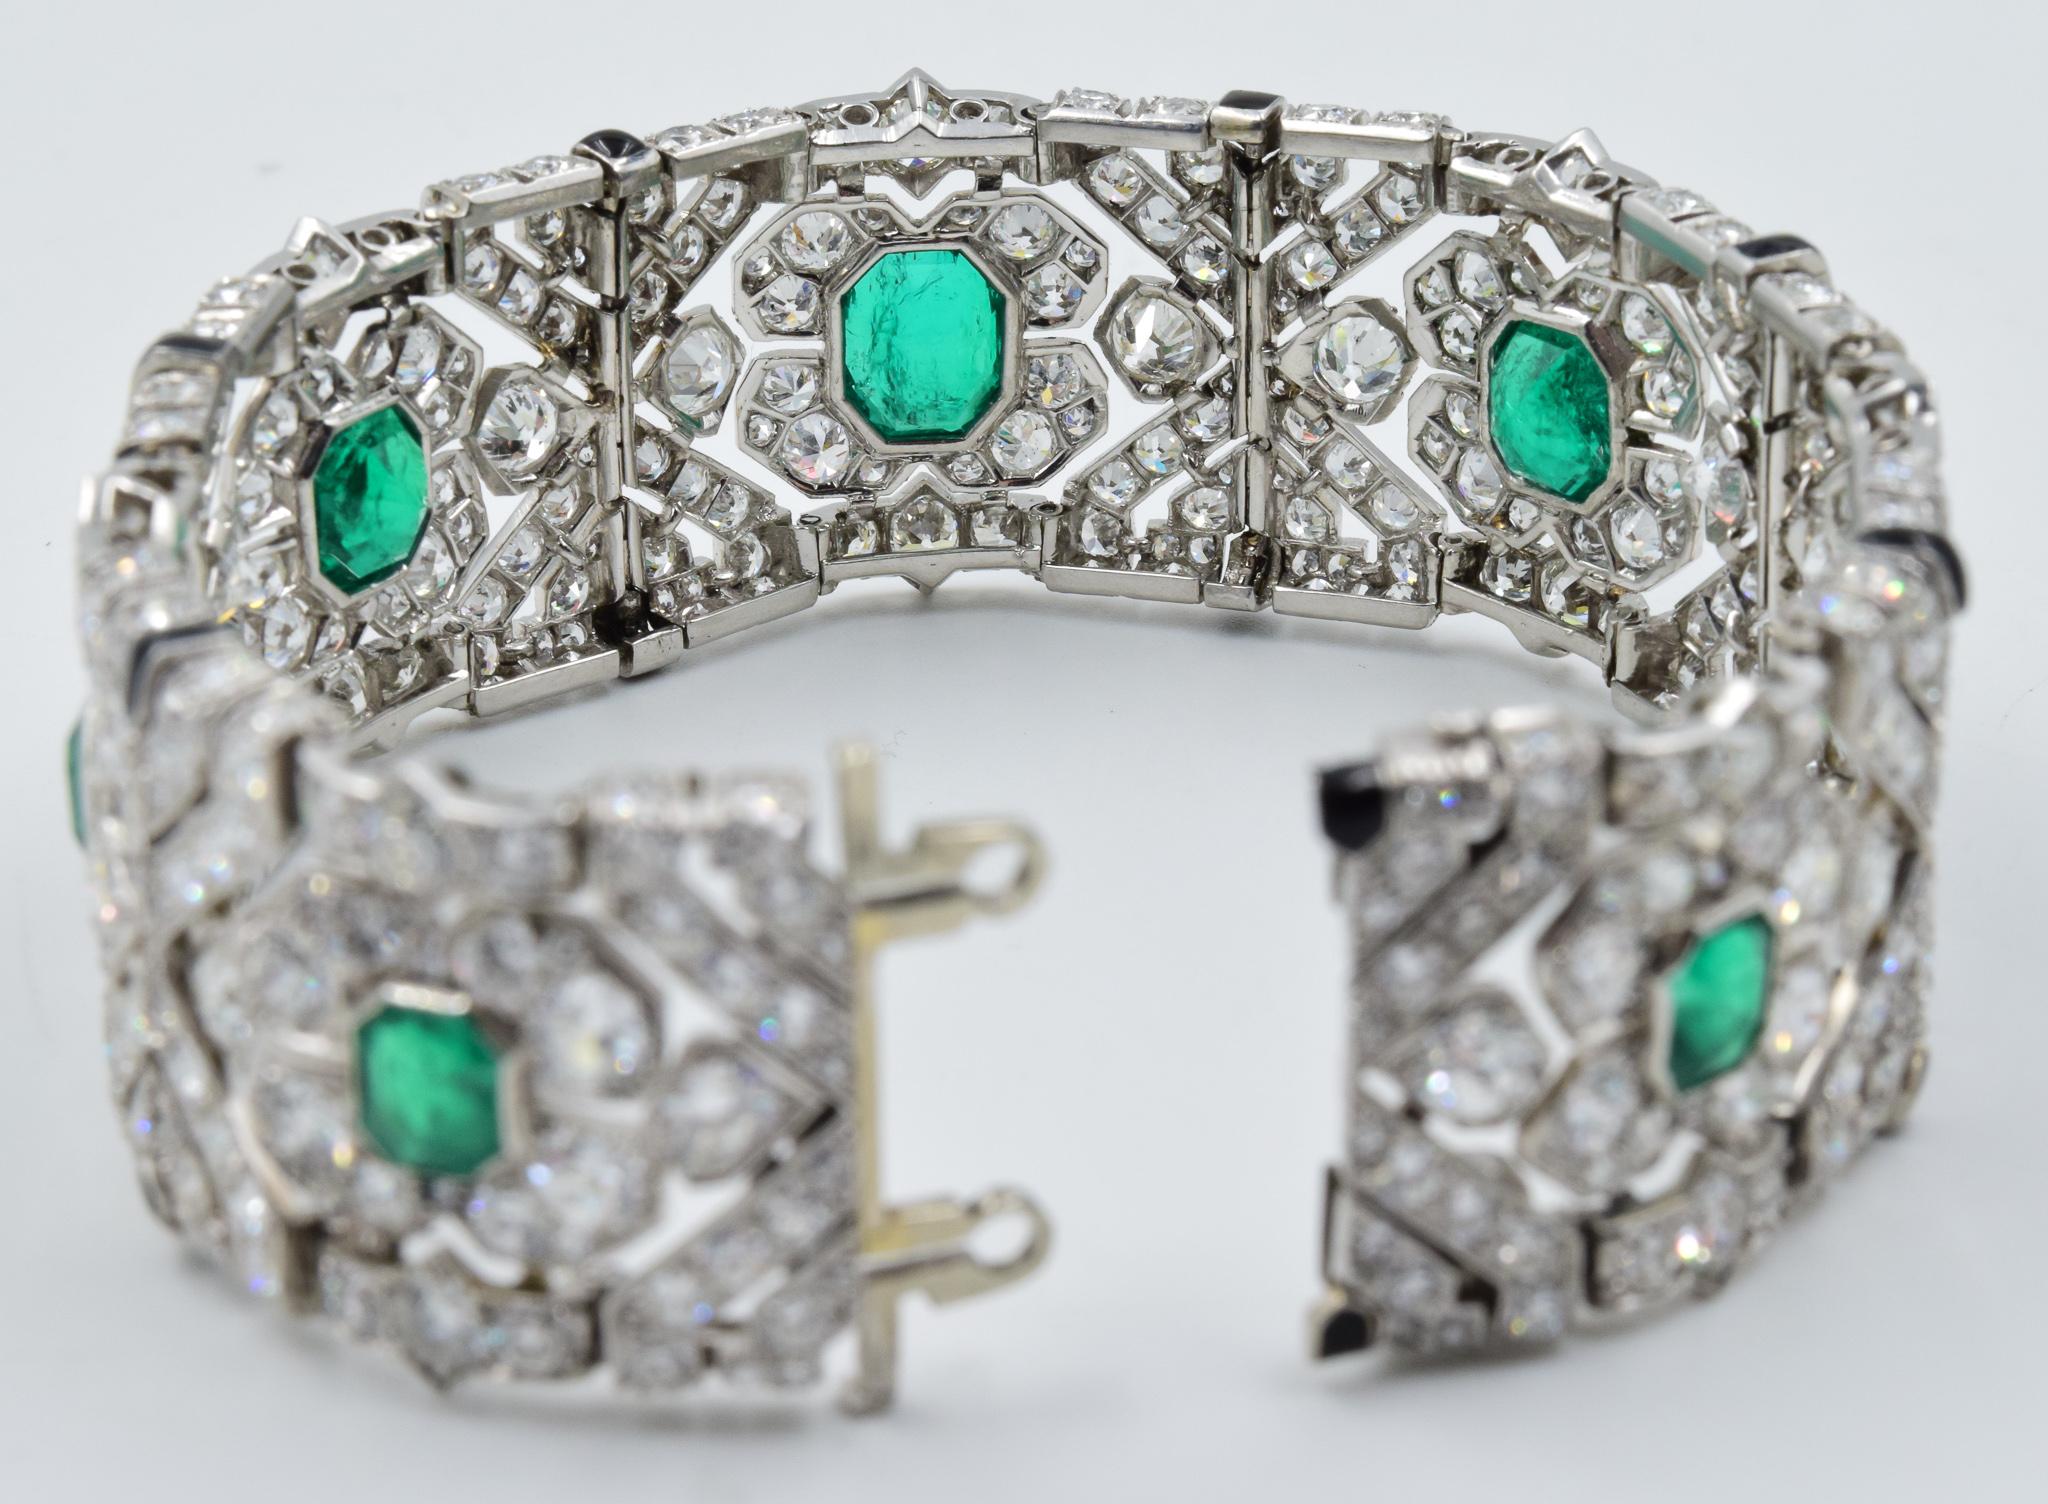 10 Carat Colombian Emerald Bracelet in Platinum AGL Certified 20 Carat 1920s Era 1